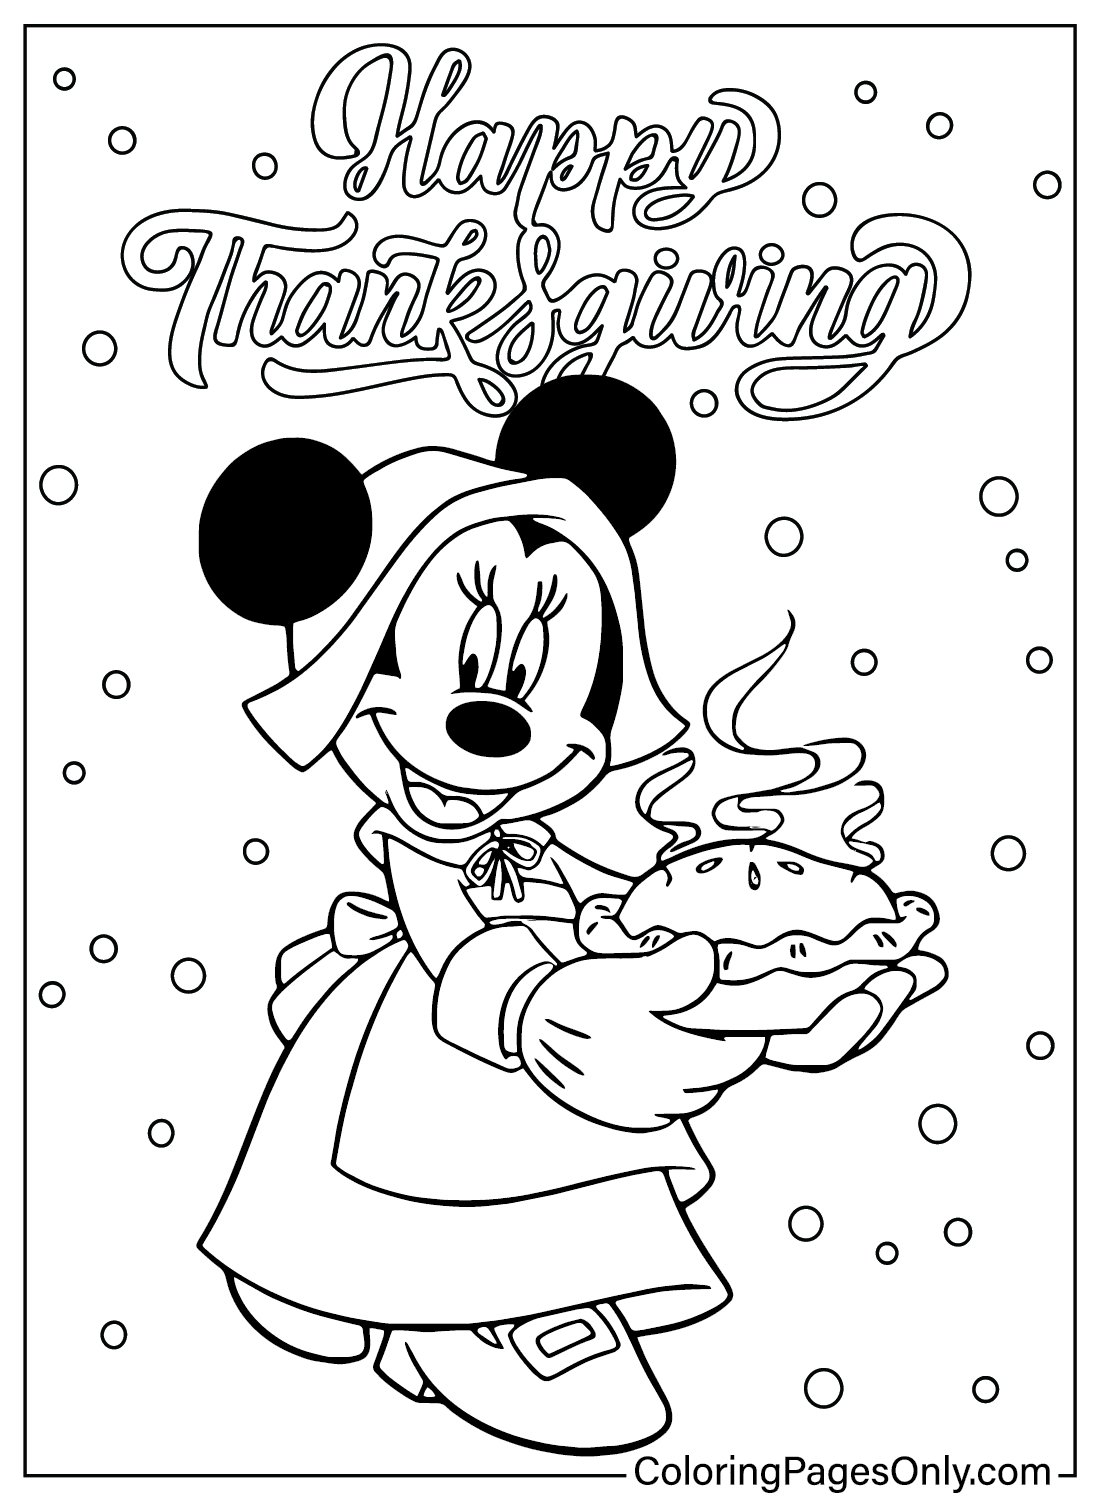 Página para colorear de Acción de Gracias de Disney Minnie de Acción de Gracias de Disney